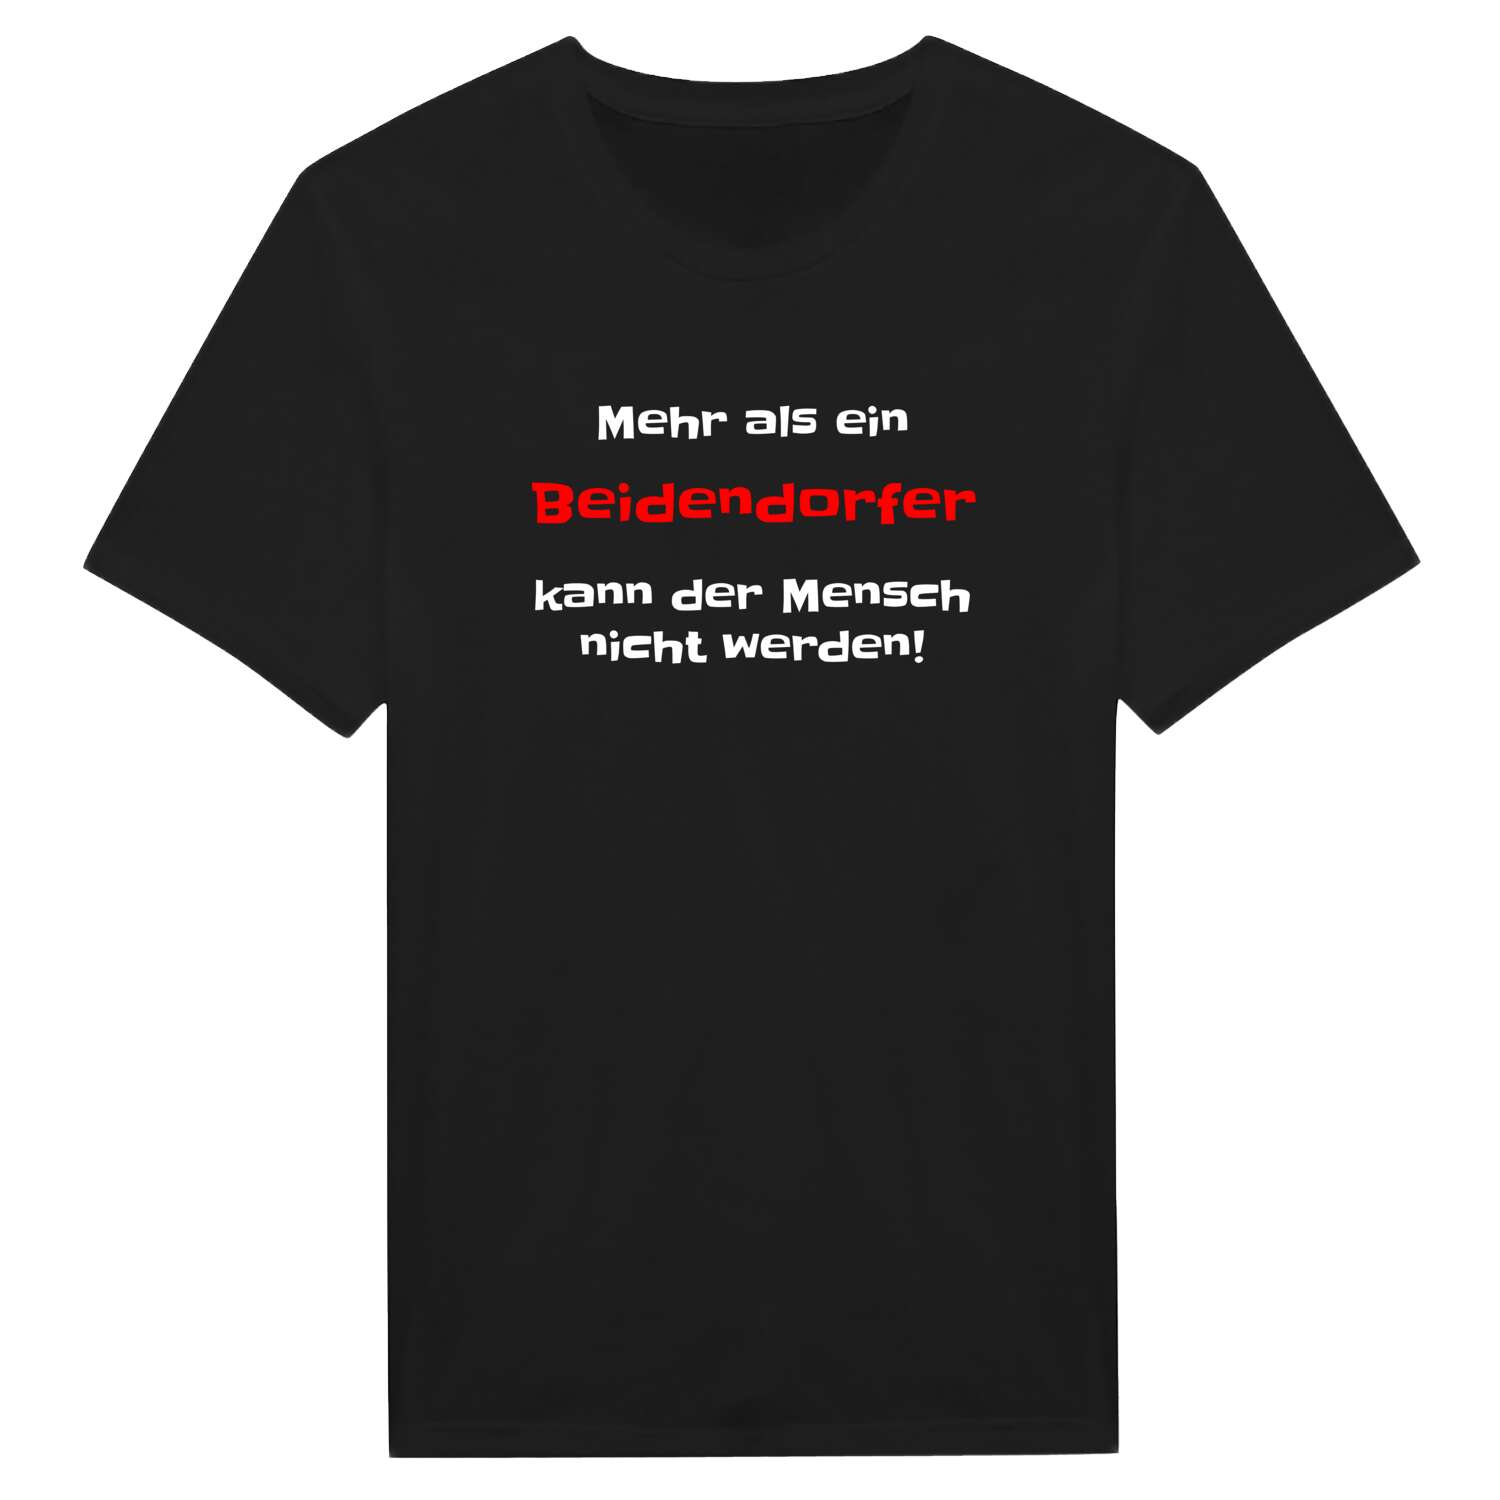 Beidendorf T-Shirt »Mehr als ein«